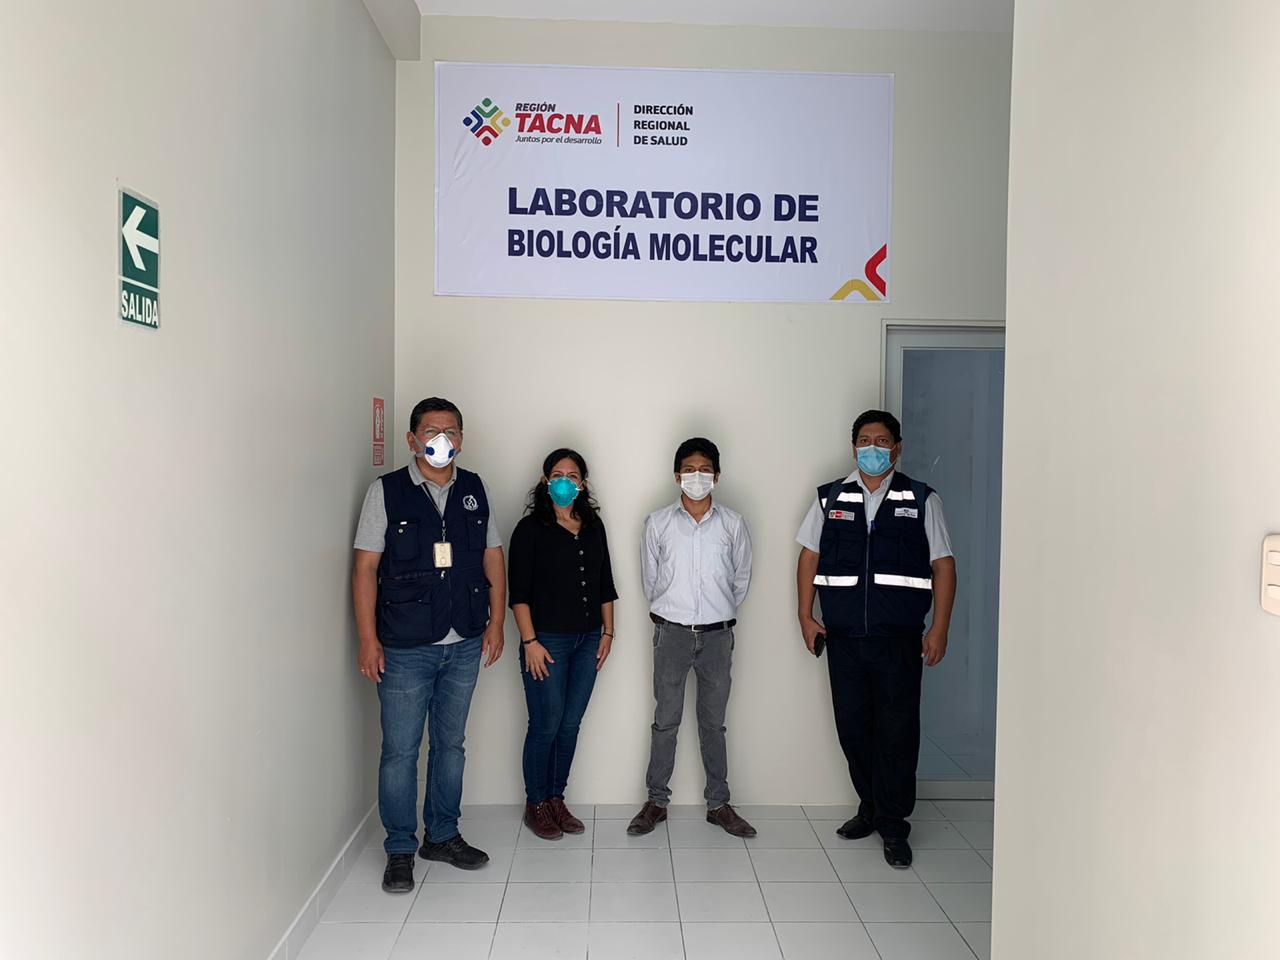 Primer laboratorio molecular empezará a funcionar desde el jueves en Tacna